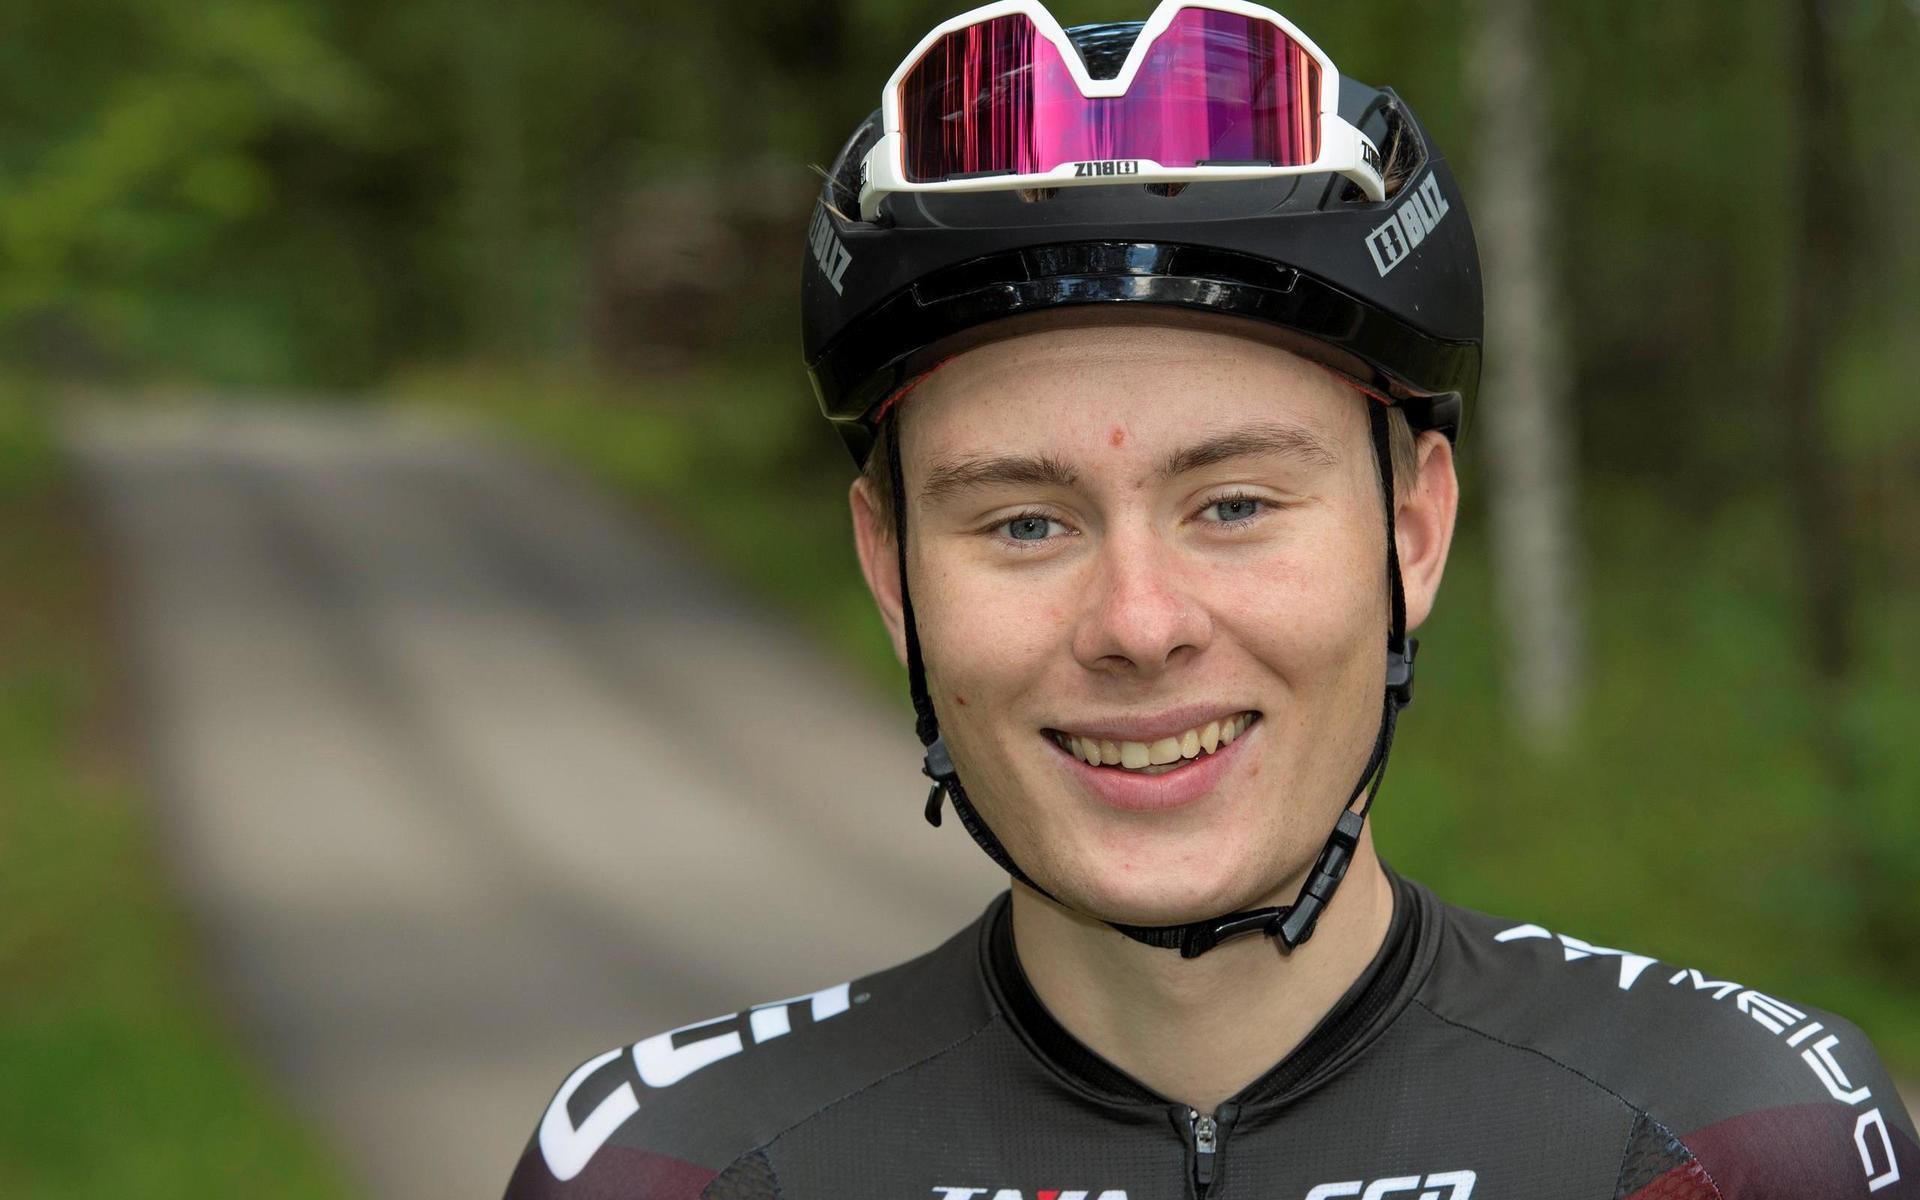 Coronapandemin har fått cykelproffset Andreas Andersson från Oskarström att trampa ny mark in i det civila arbetslivet. Men på lördag gör han tävlingscomeback i tempo-SM.